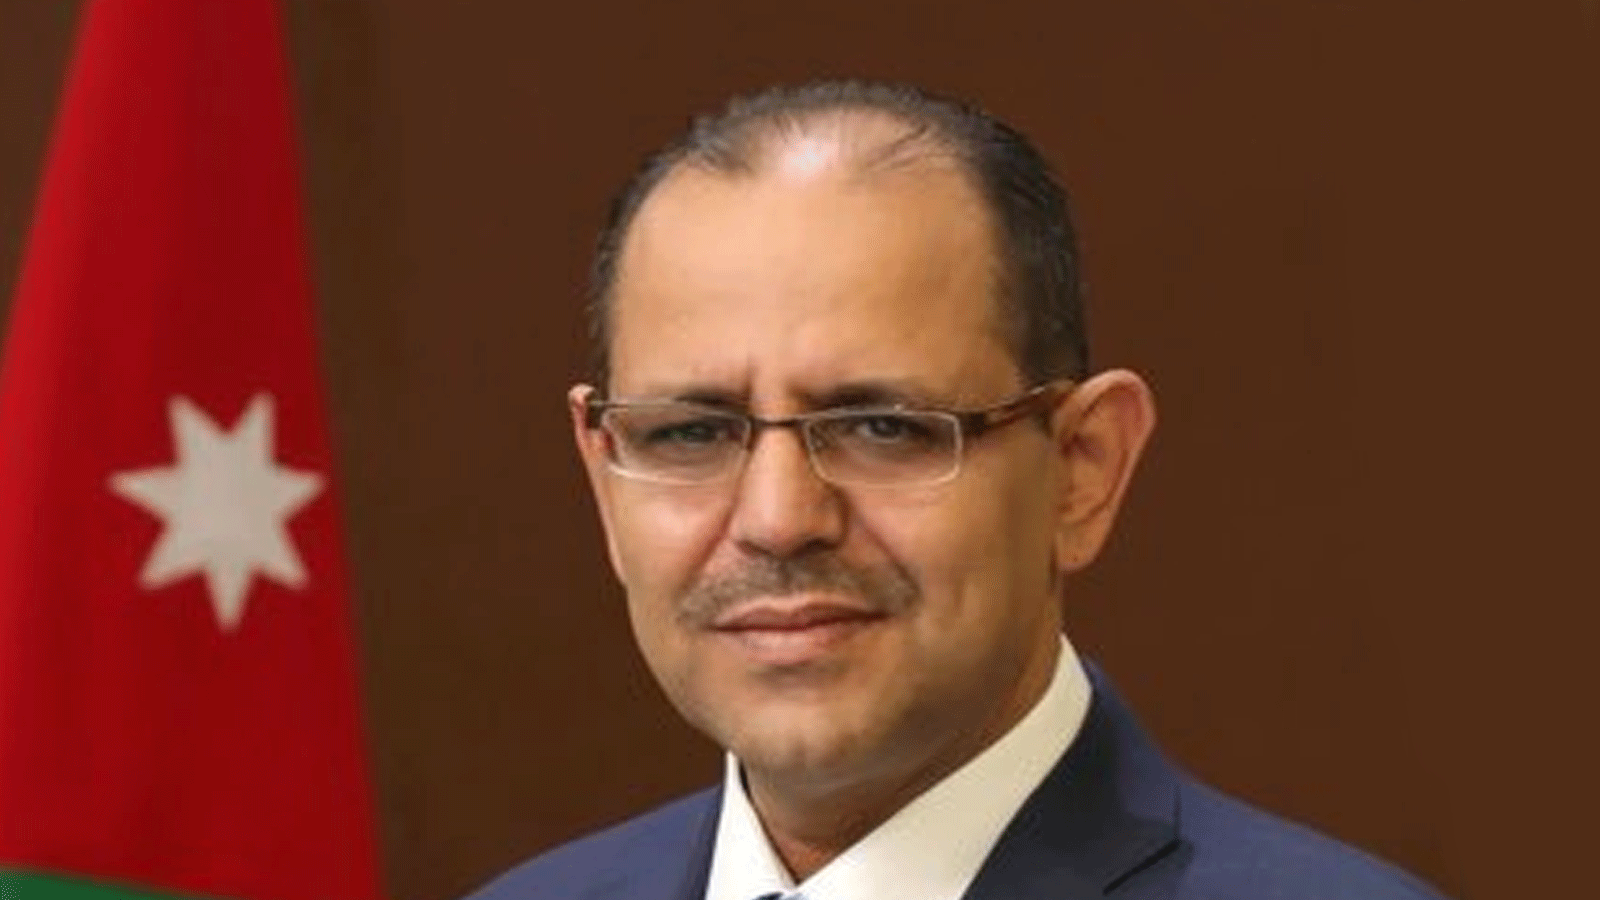  الناطق الرسمي بأسم وزارة الخارجية الأردنية هيثم أبو الفول(تويتر)